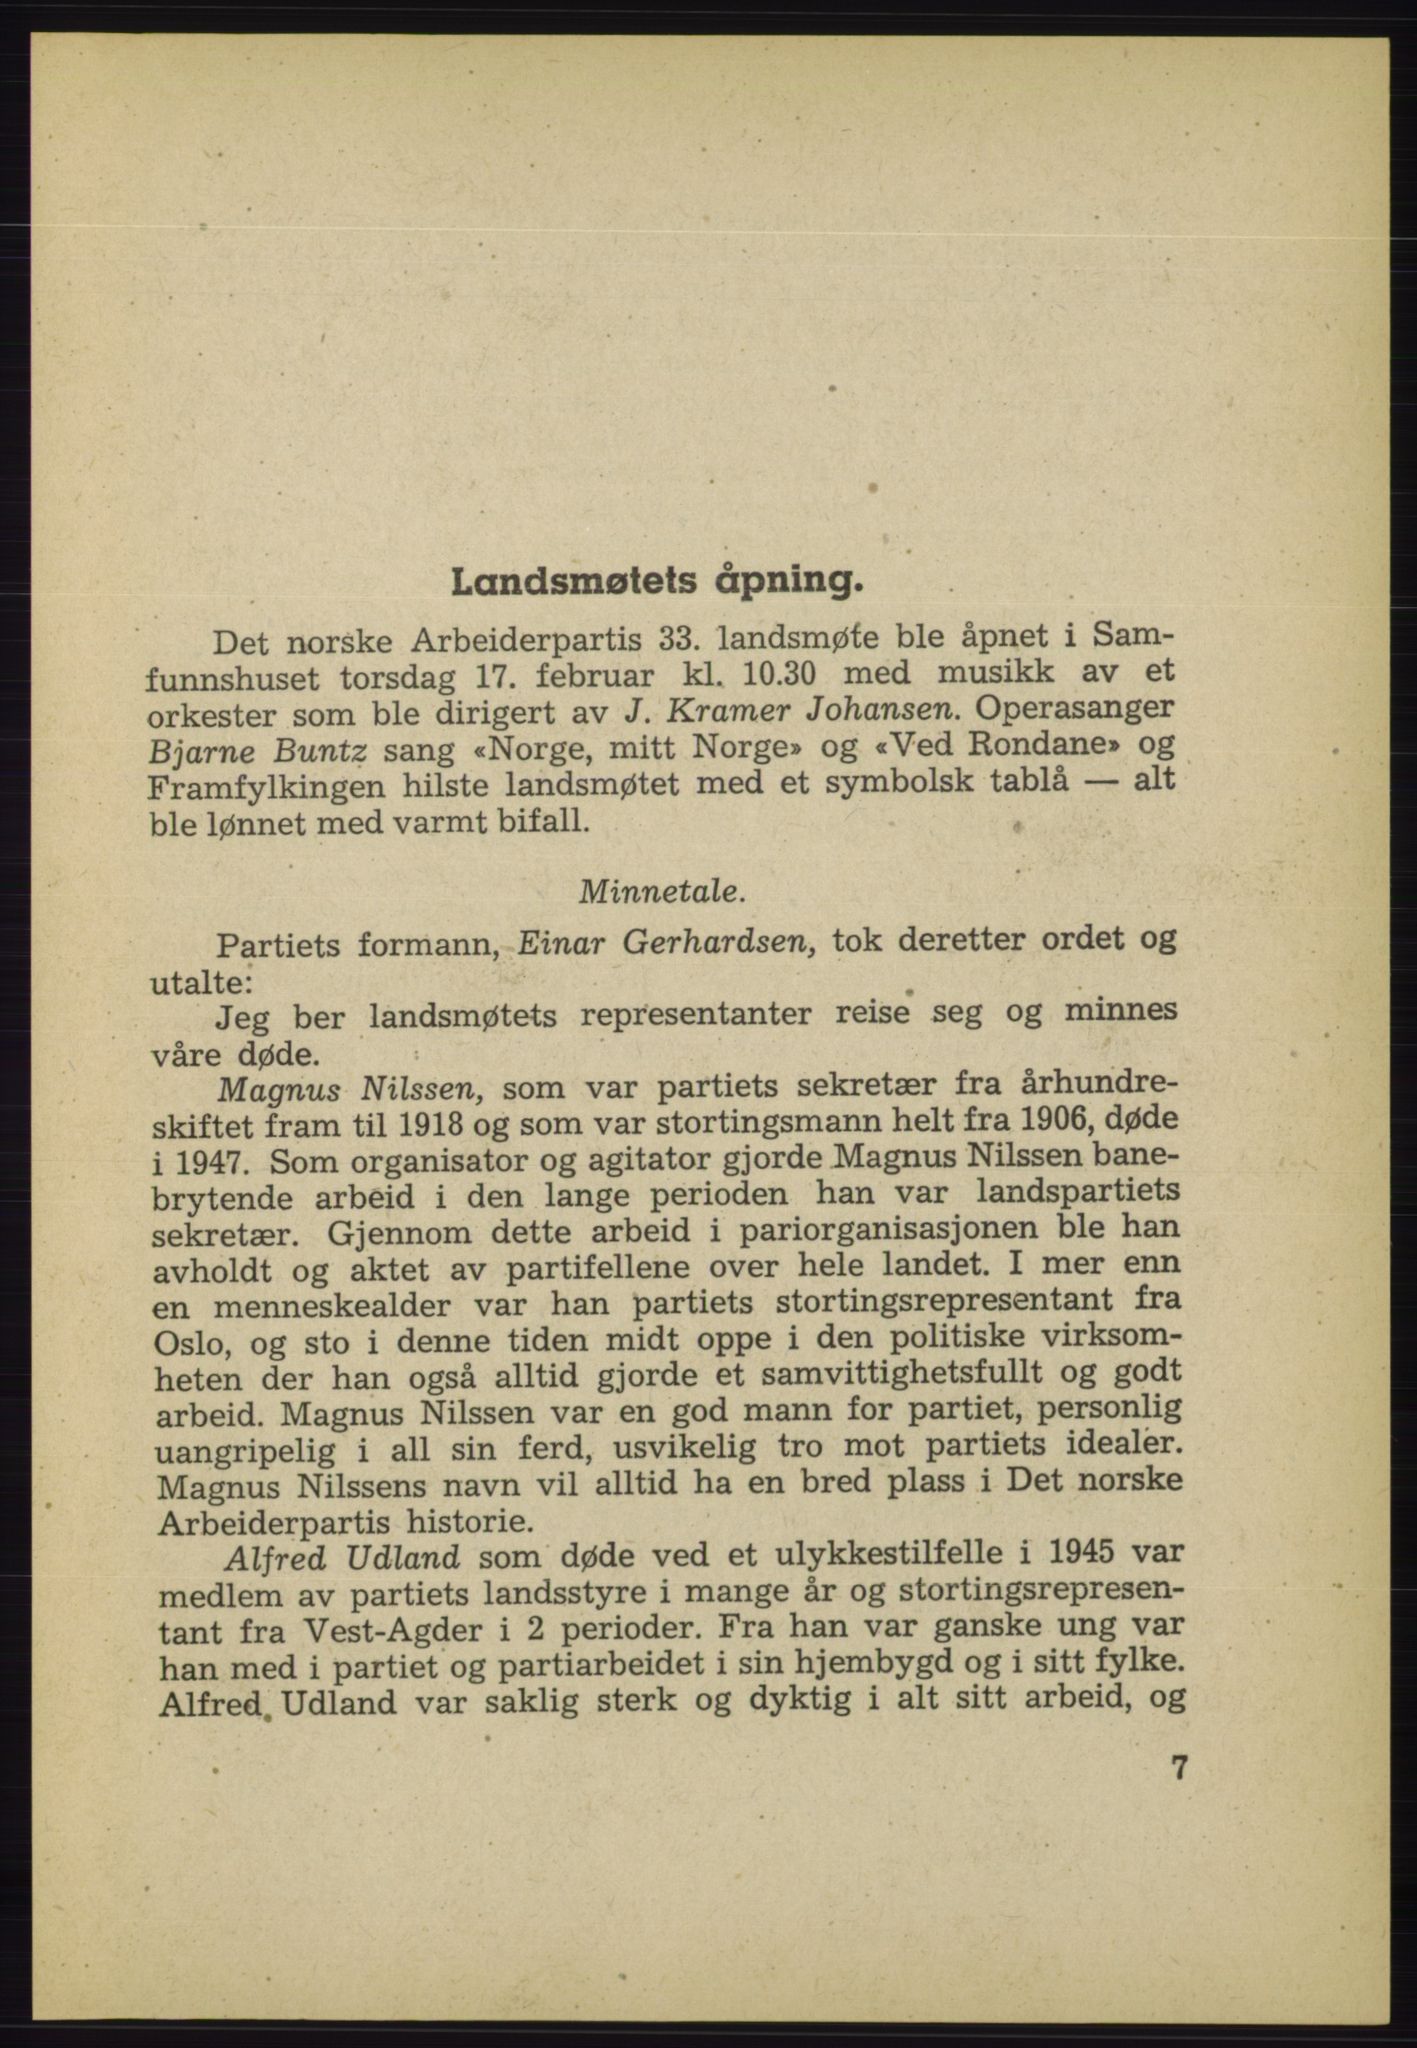 Det norske Arbeiderparti - publikasjoner, AAB/-/-/-: Protokoll over forhandlingene på det 33. ordinære landsmøte 17.-20. februar 1949 i Oslo, 1949, p. 7